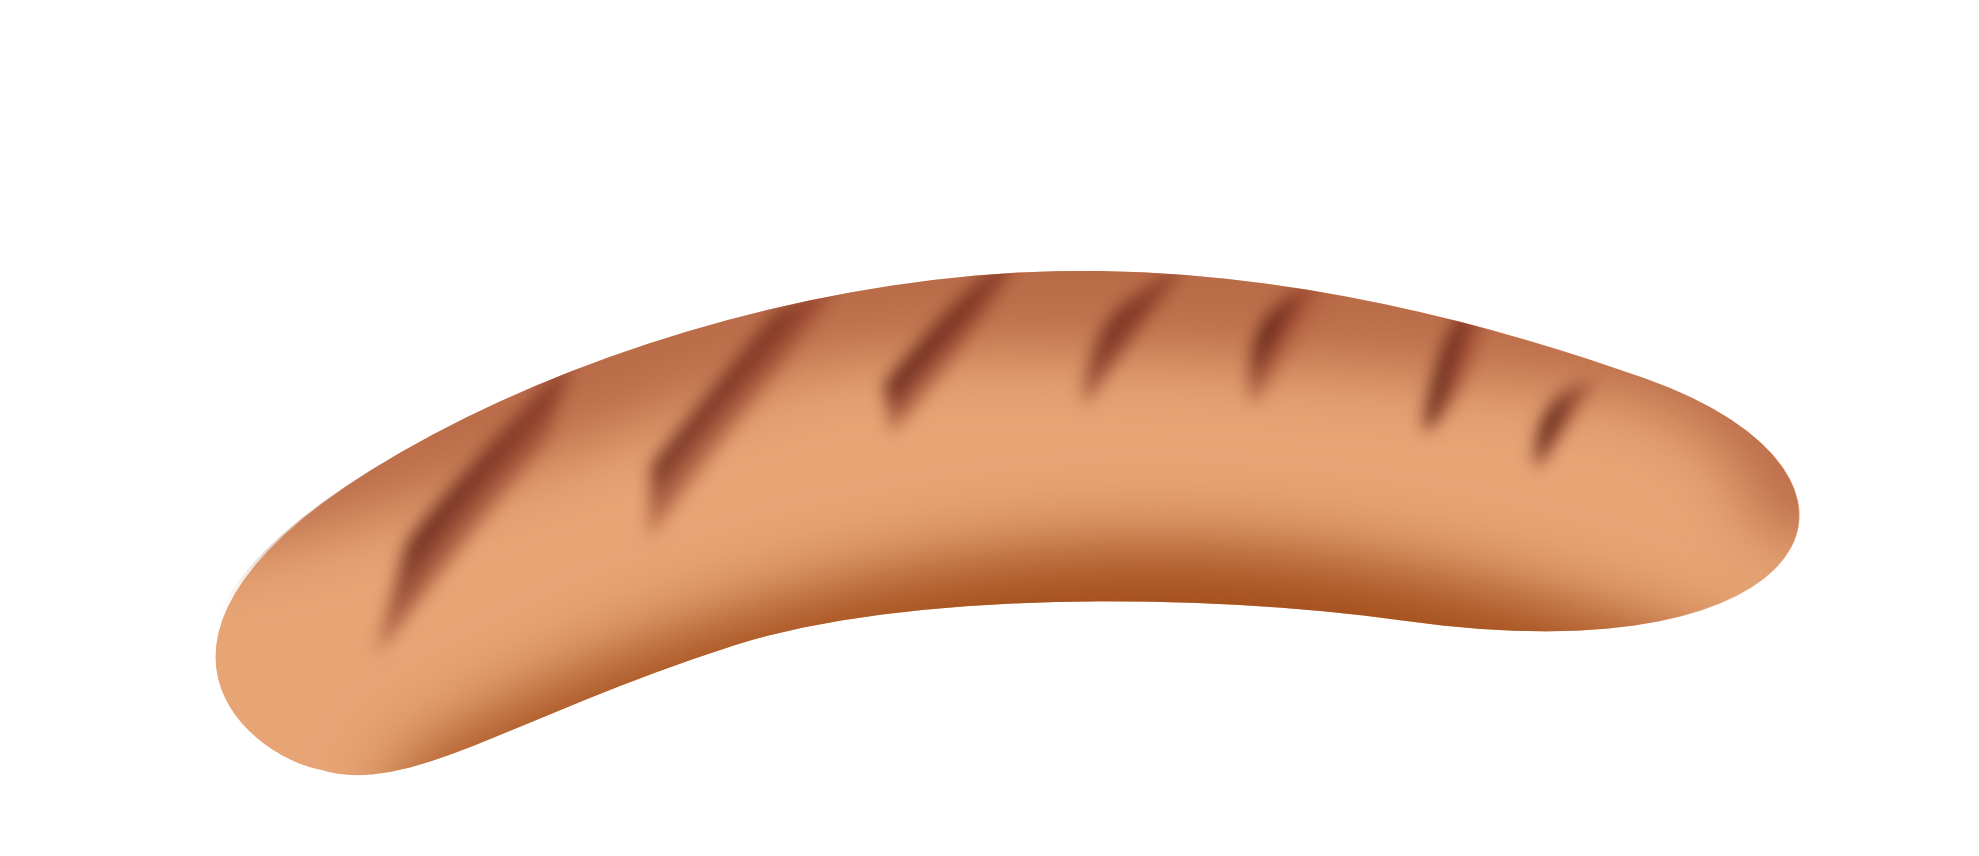 Hot dog sausage PNG image